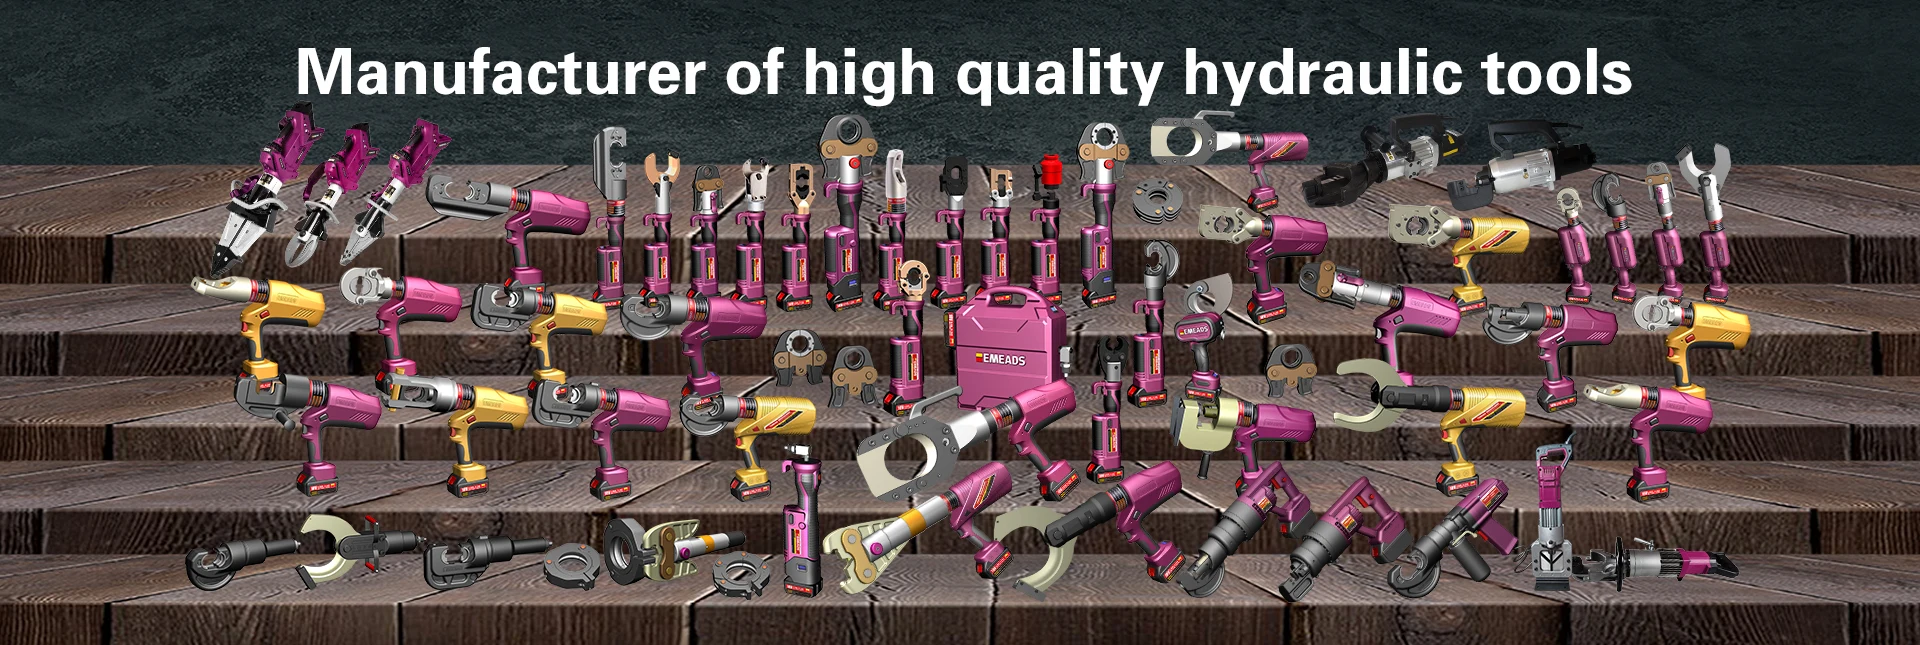 Mga Manufacturer ng Hydraulic Cutting Tool